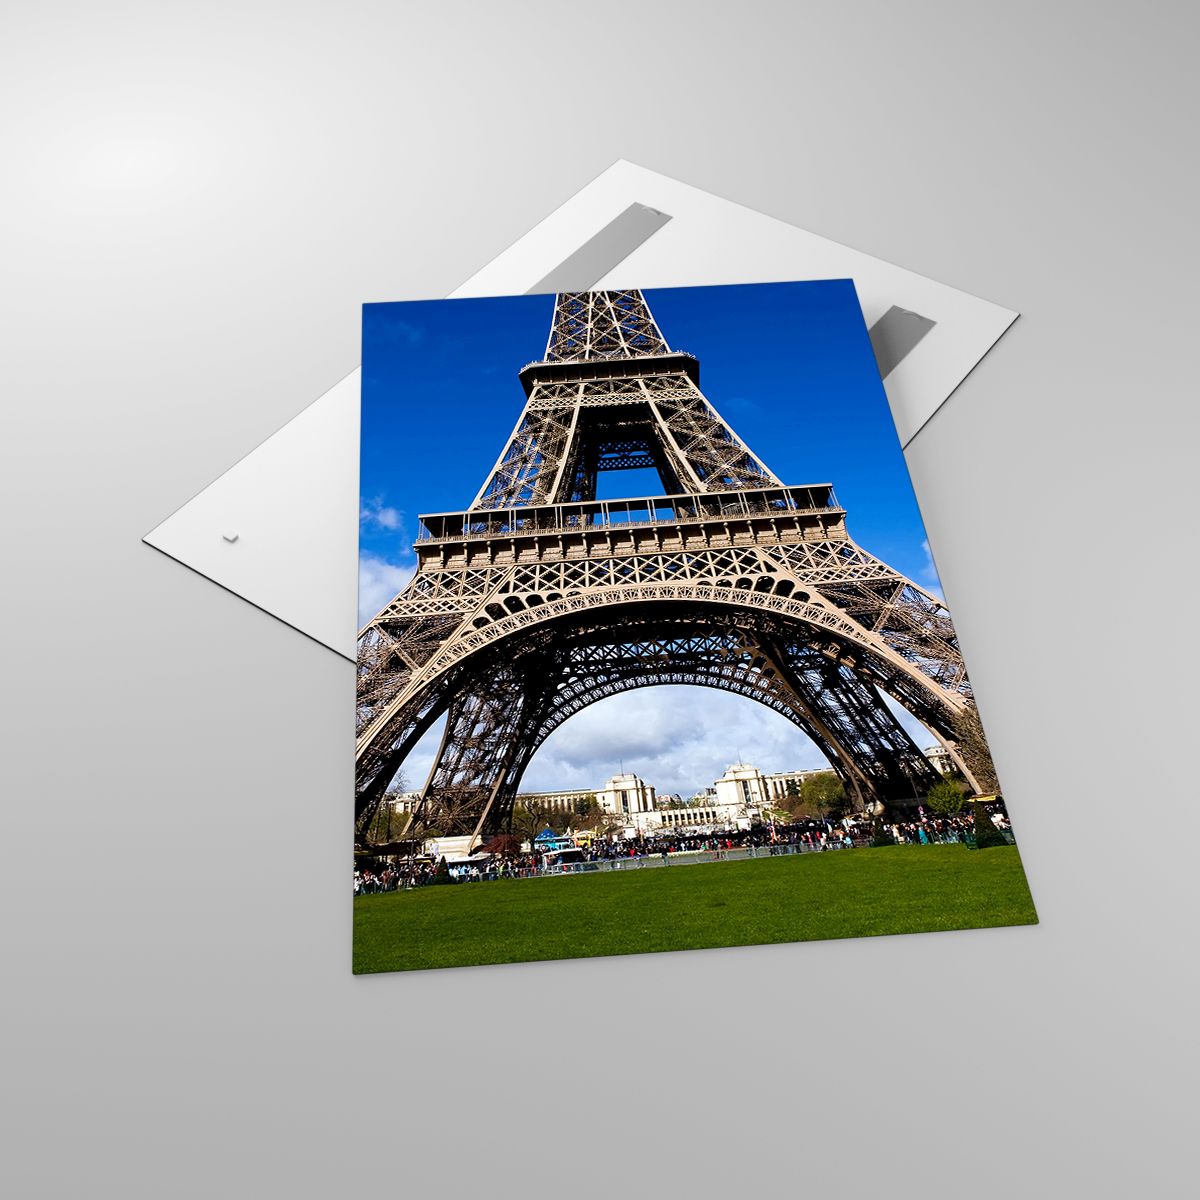 Glasbild Eiffelturm, Glasbild Paris, Glasbild Die Architektur, Glasbild Frankreich, Glasbild Stadt